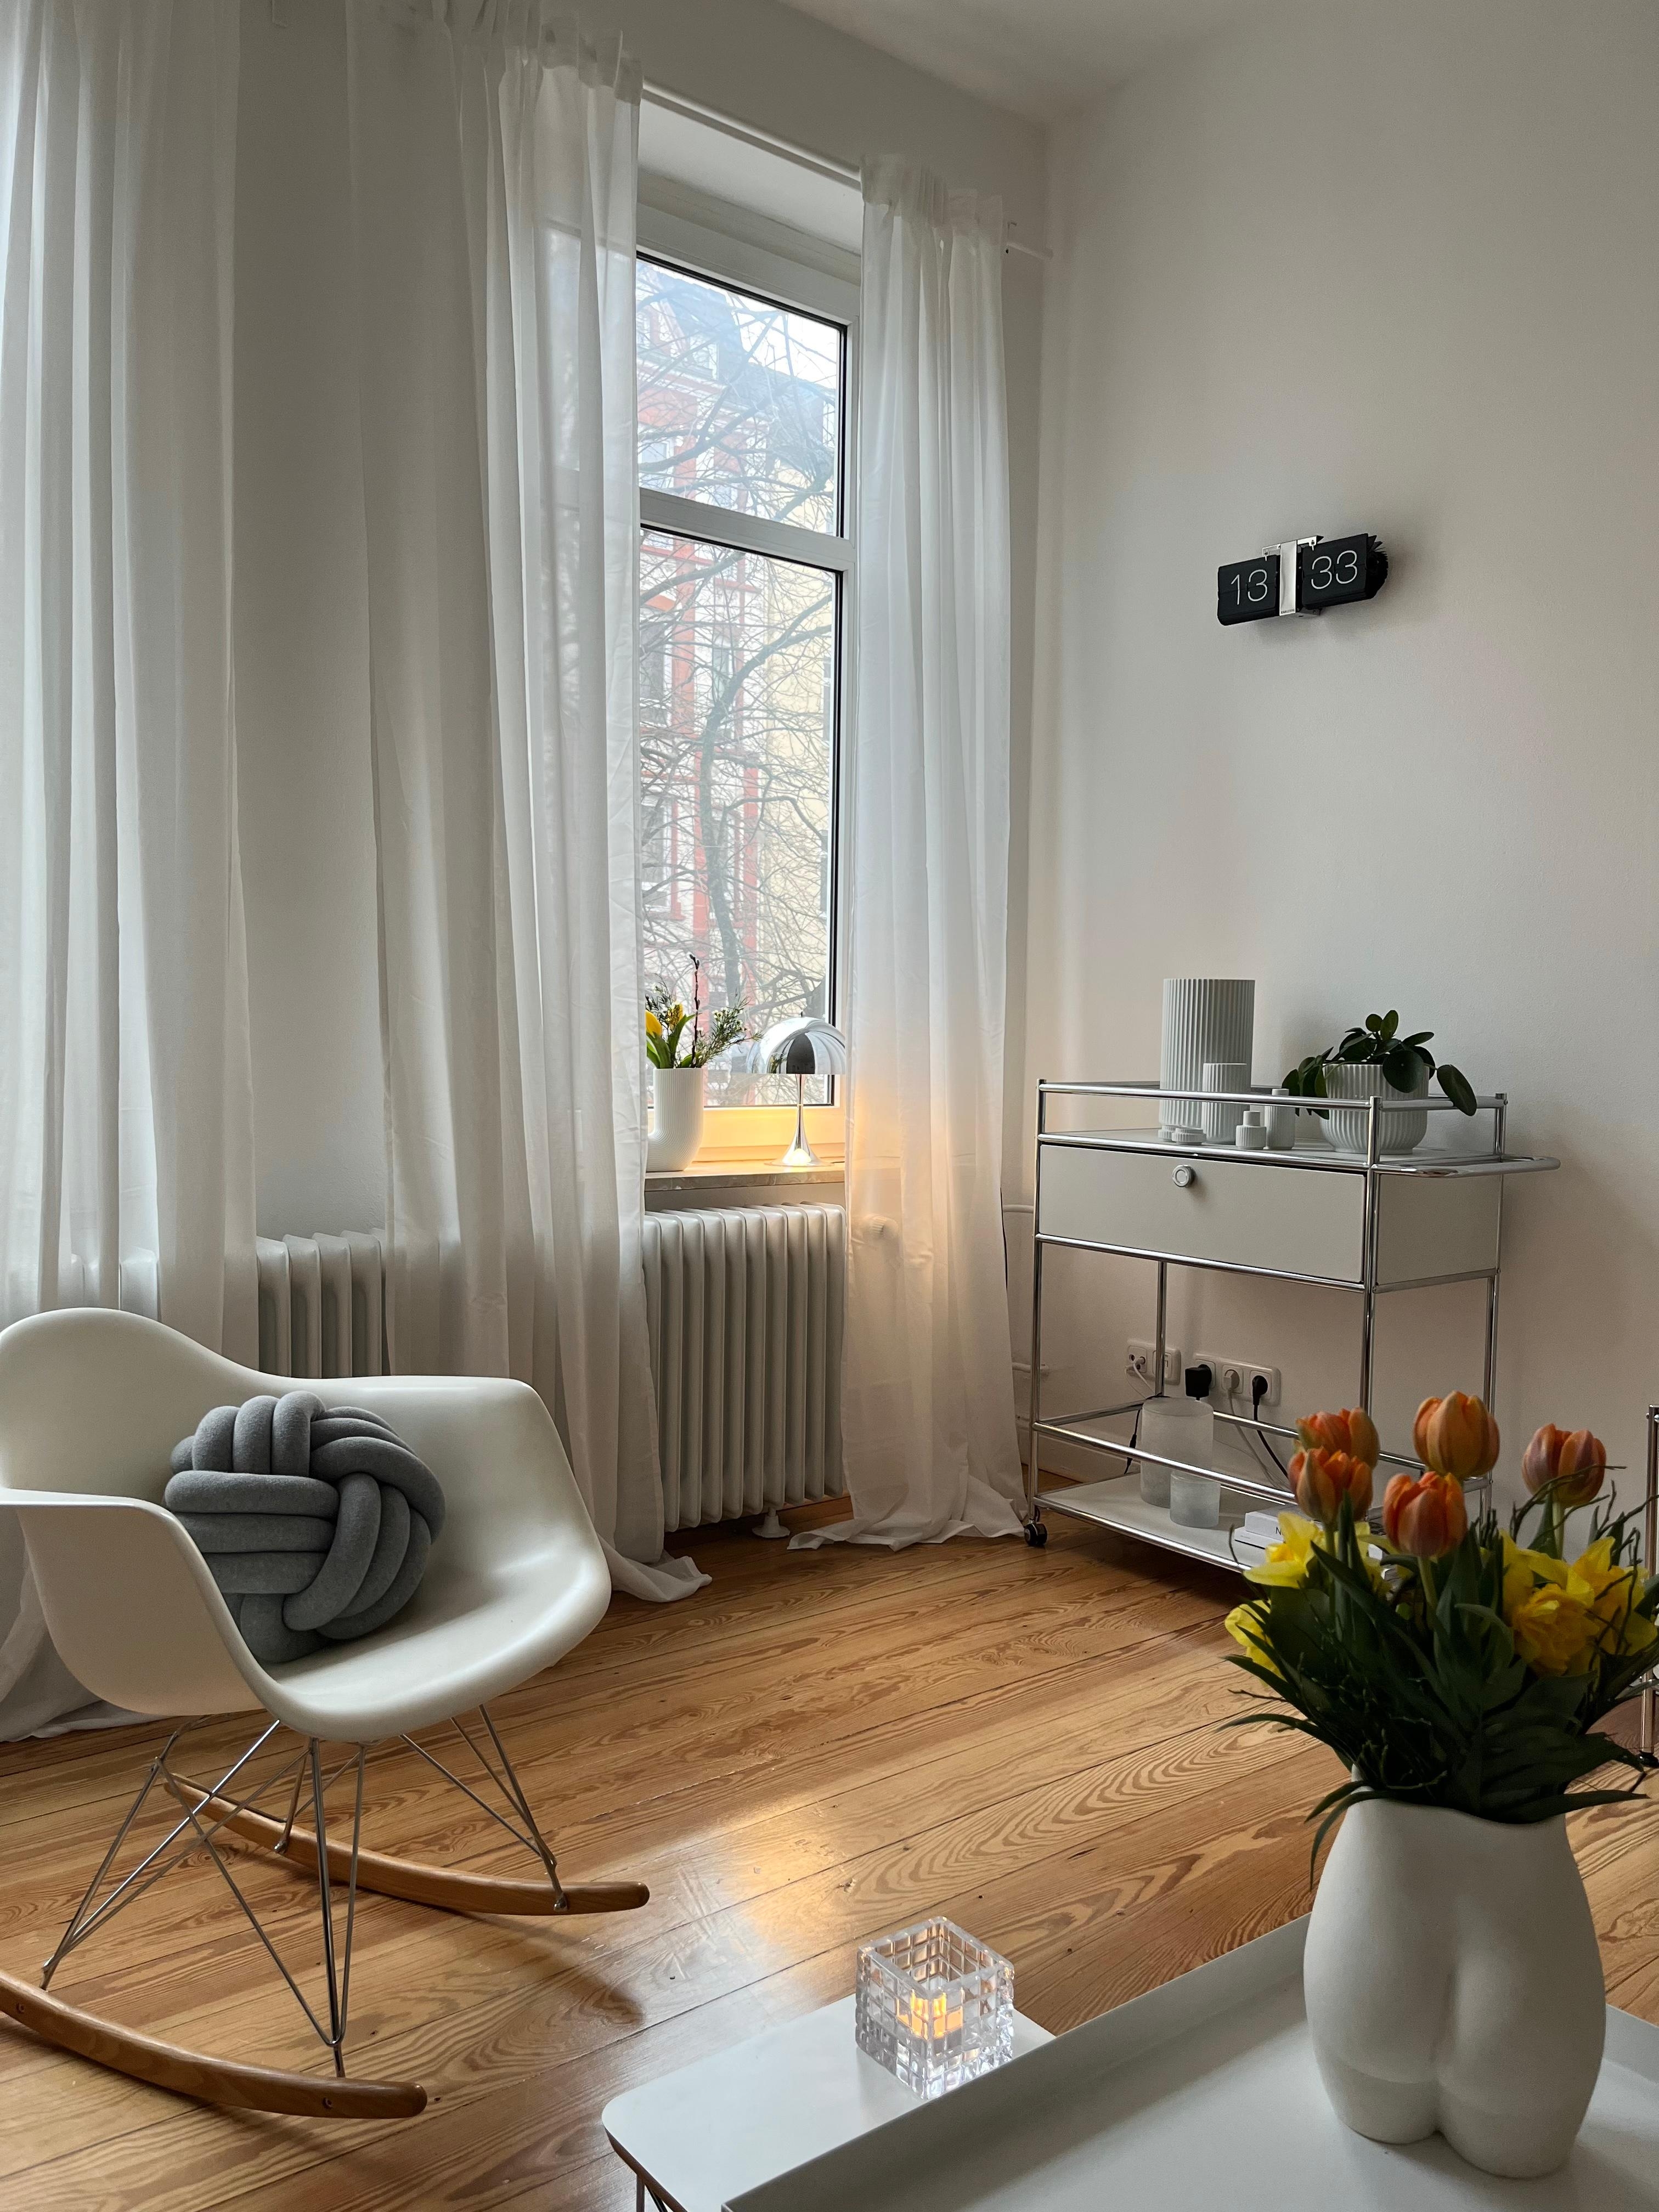 #wohnzimmer #altbauwohnung #skandinavischwohnen #vasenliebe #frischeblumen #leuchtenliebe 